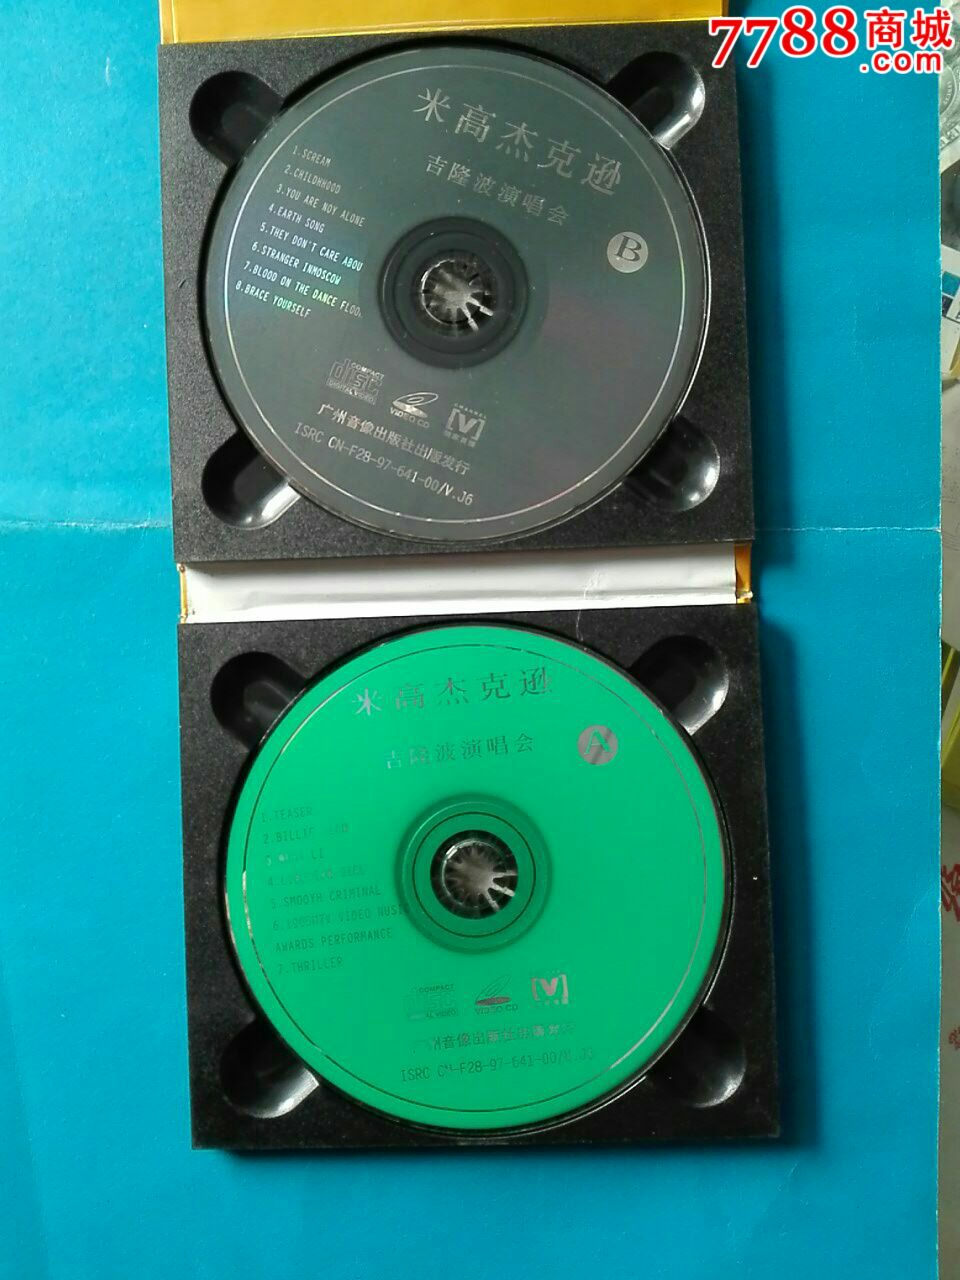 米高杰克逊98年吉隆坡演唱会2碟装-se349411